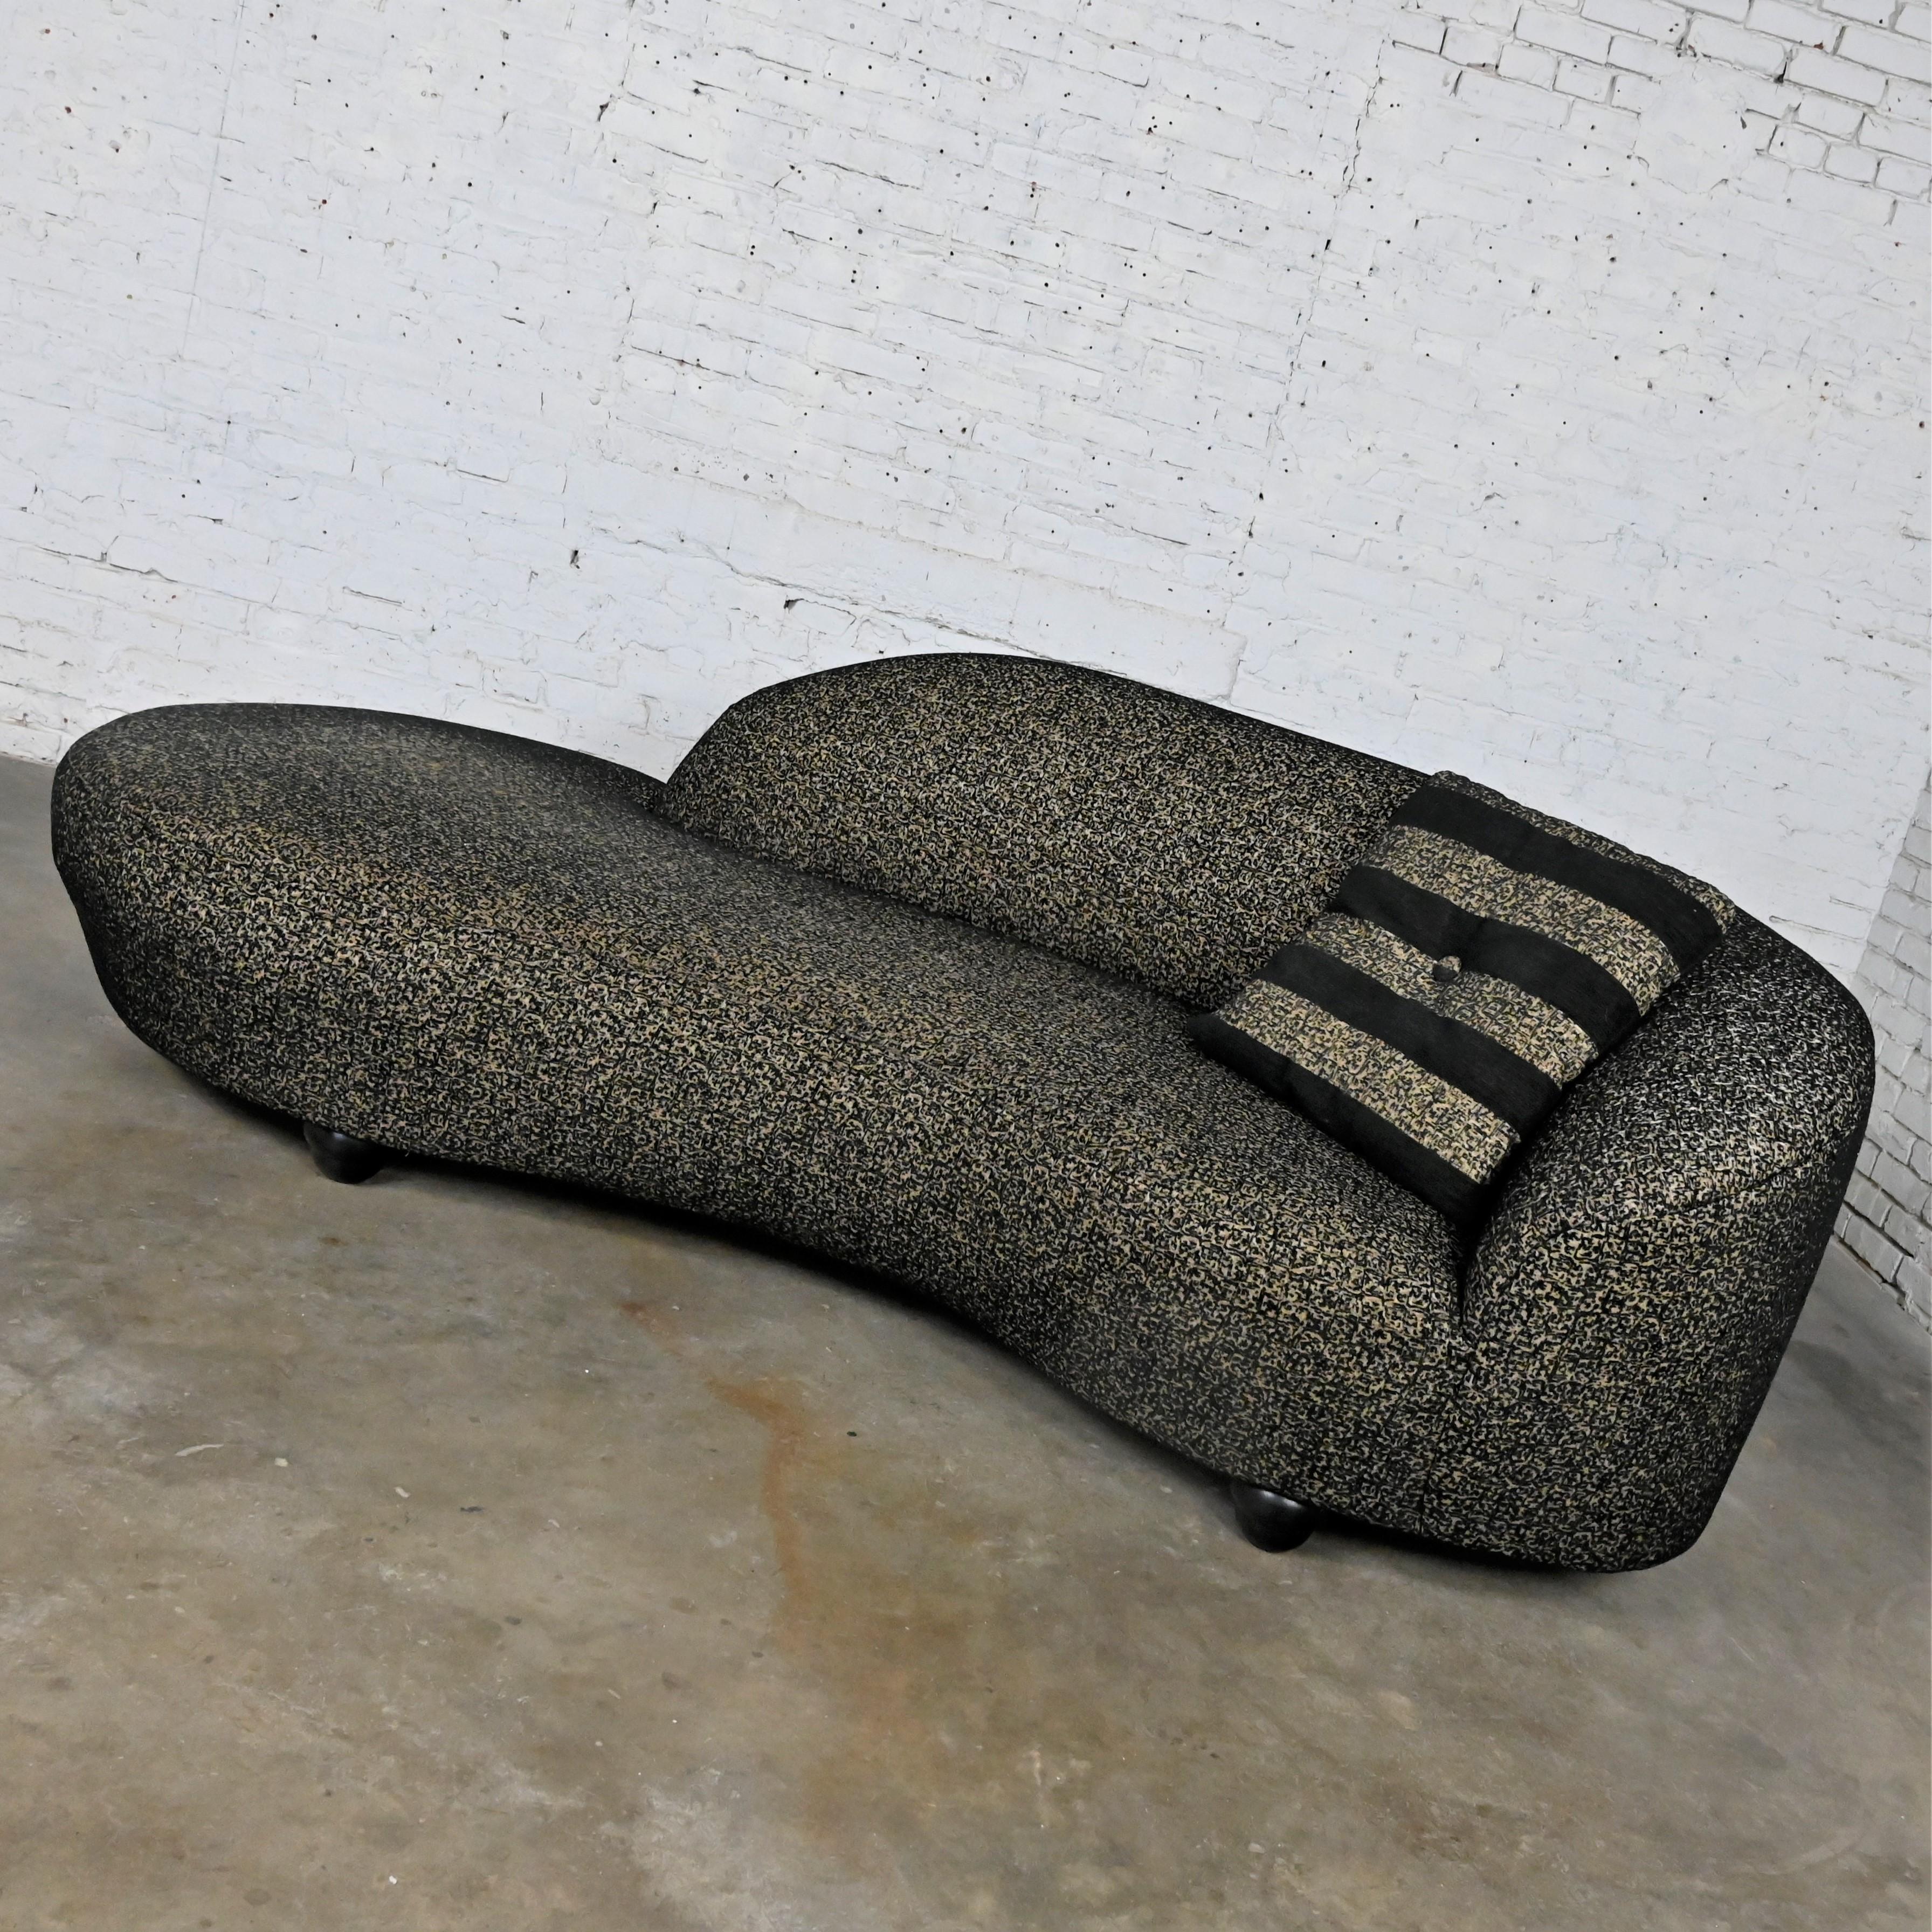 Hübsches postmodernes schwarzes und khakifarbenes Serpentinen-Sofa in Wolkenform oder biomorphes Sofa mit Kissen auf gestapelten, konzentrischen, abgerundeten Beinen. Schöner Zustand, im Auge behalten, dass dies Vintage und nicht neu ist, so wird